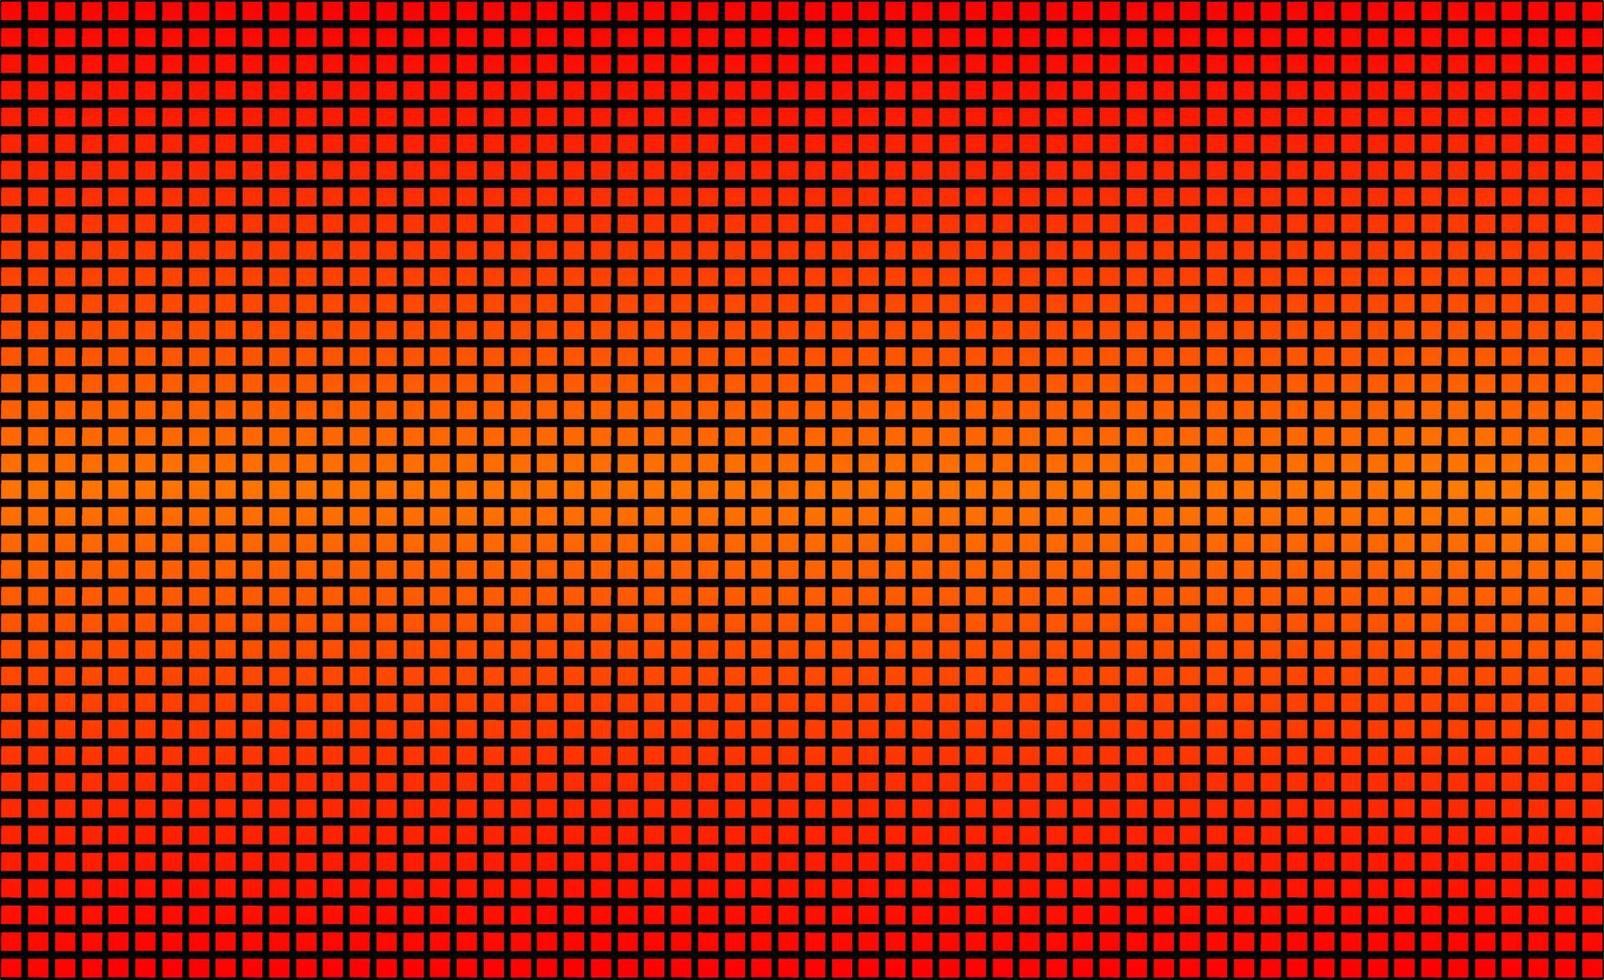 fond de texture d'écran de mur vidéo led, panneau de télévision carré avec dégradé de couleur orange, écran abstrait avec motif de pixels, vecteur